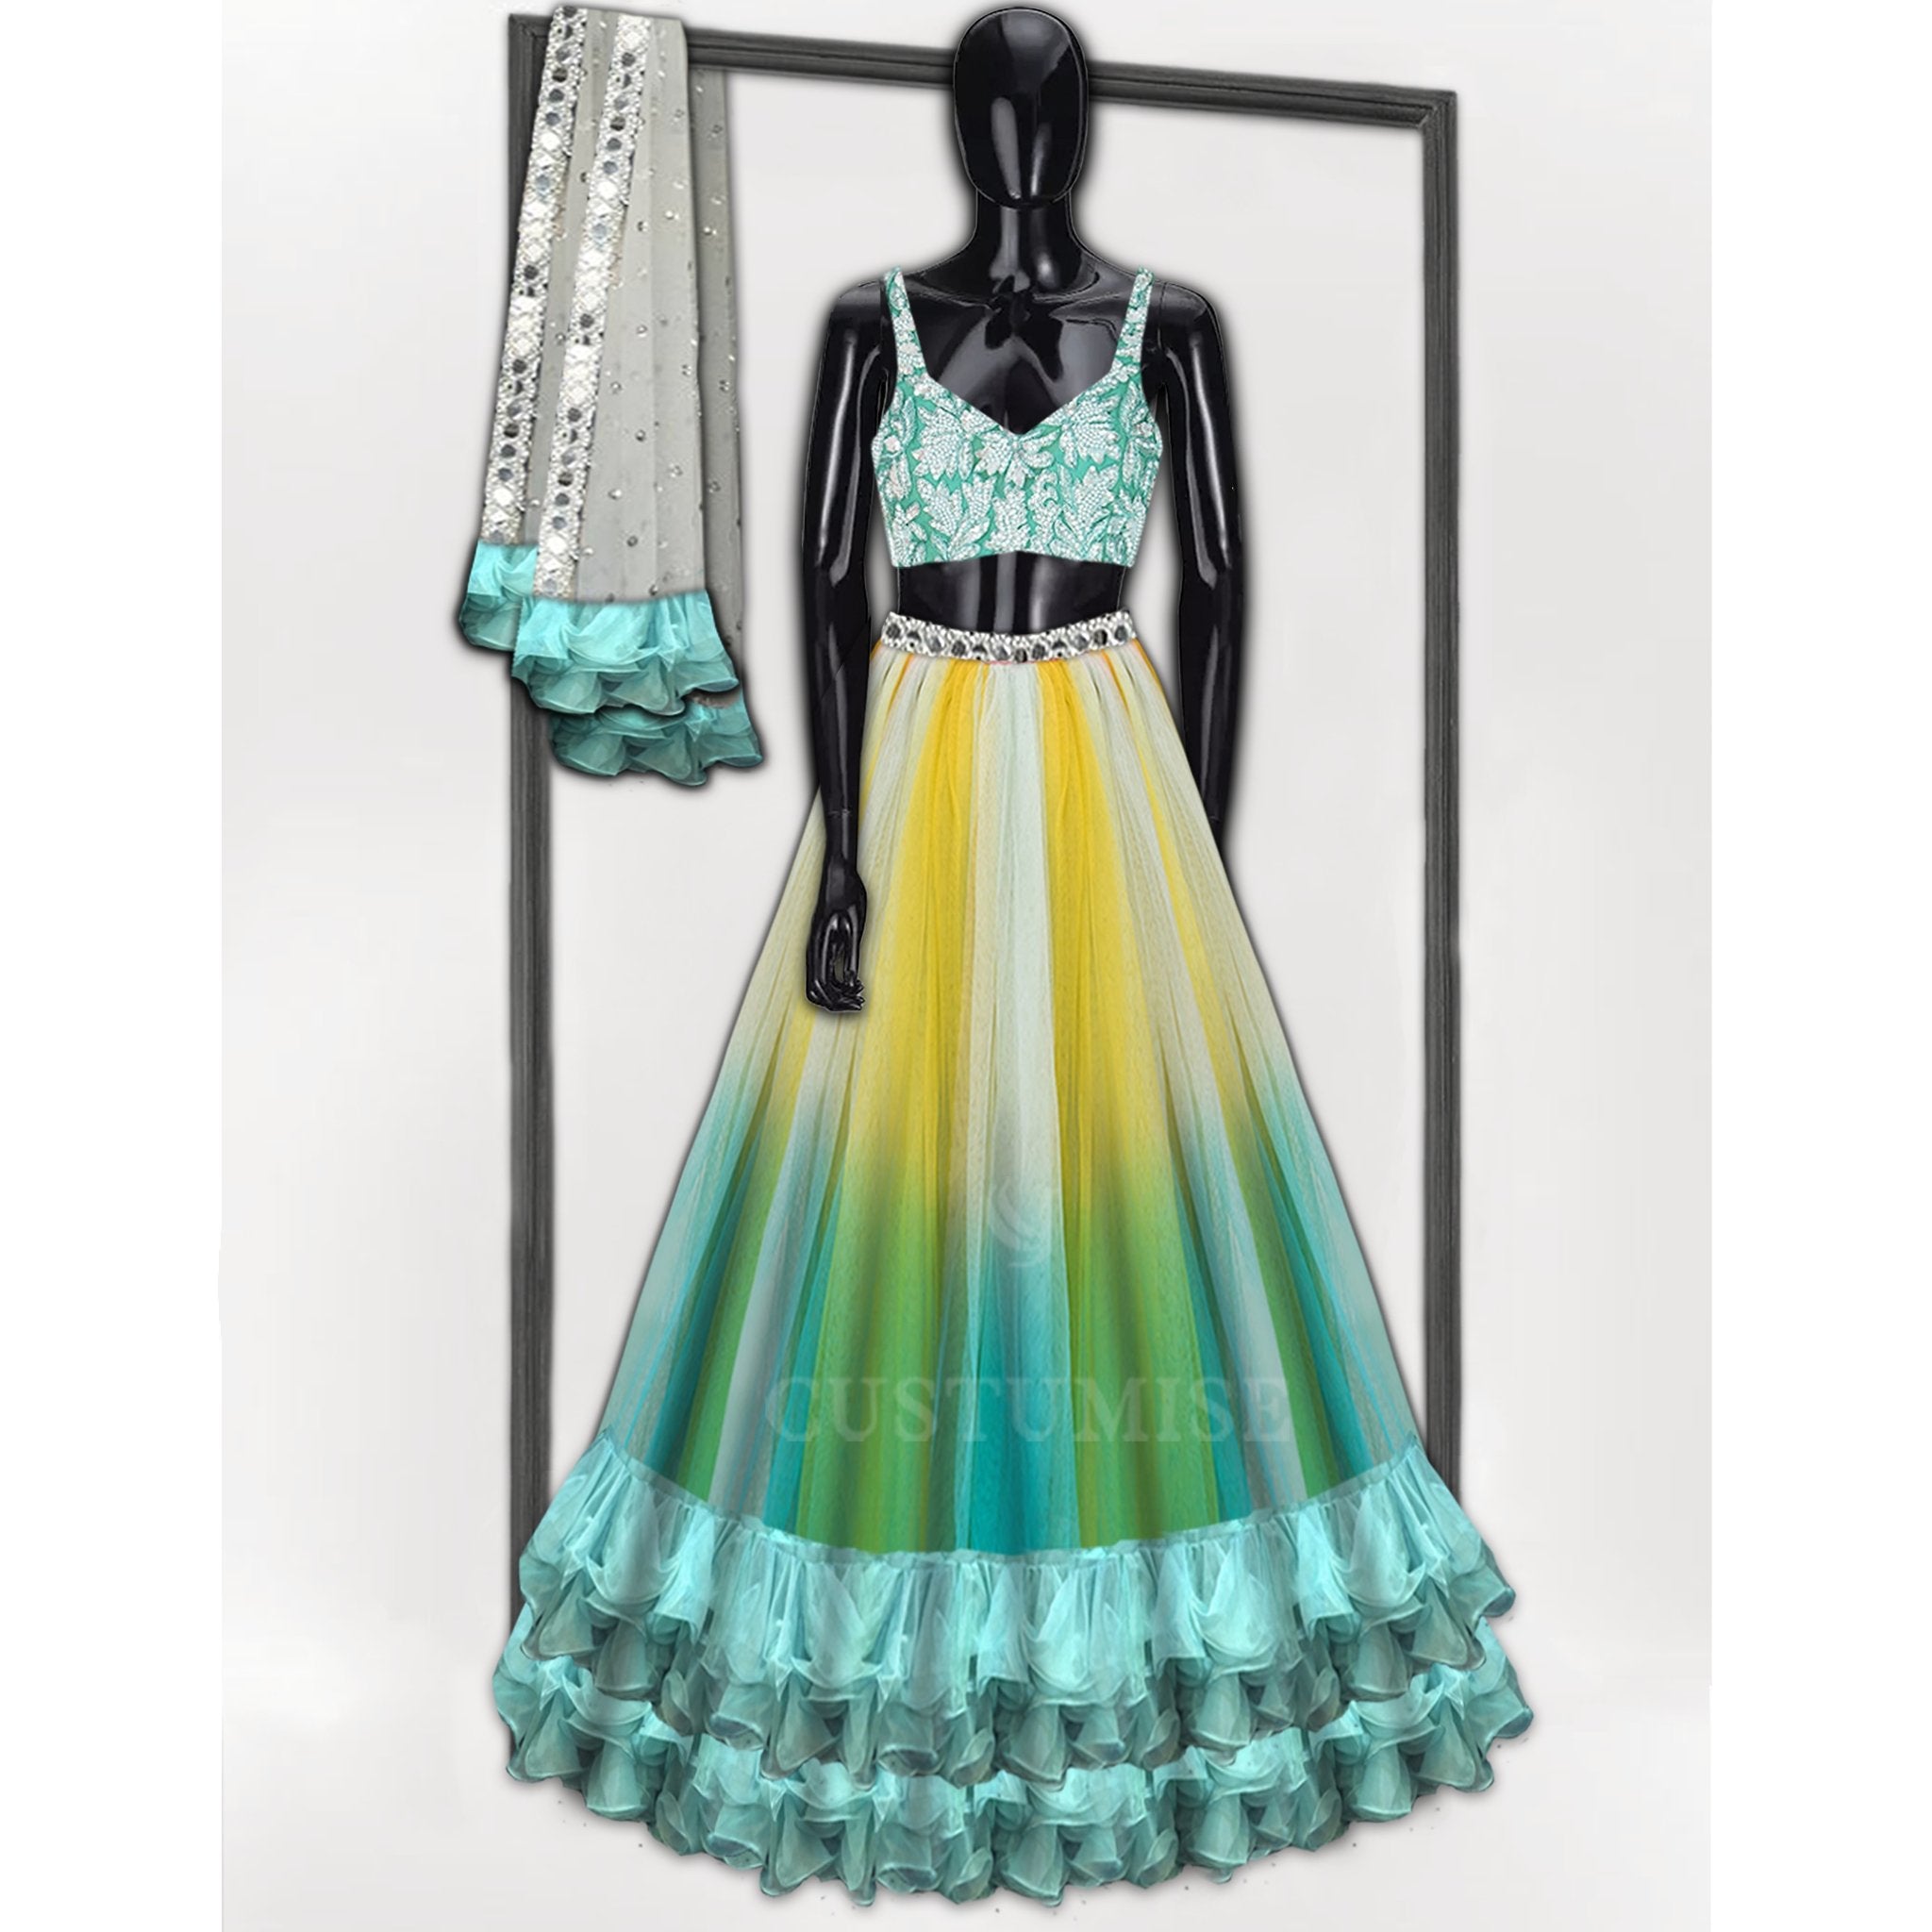 Aqua Blue shaded Lehenga with Ruffles - Indian Designer Bridal Wedding Outfit